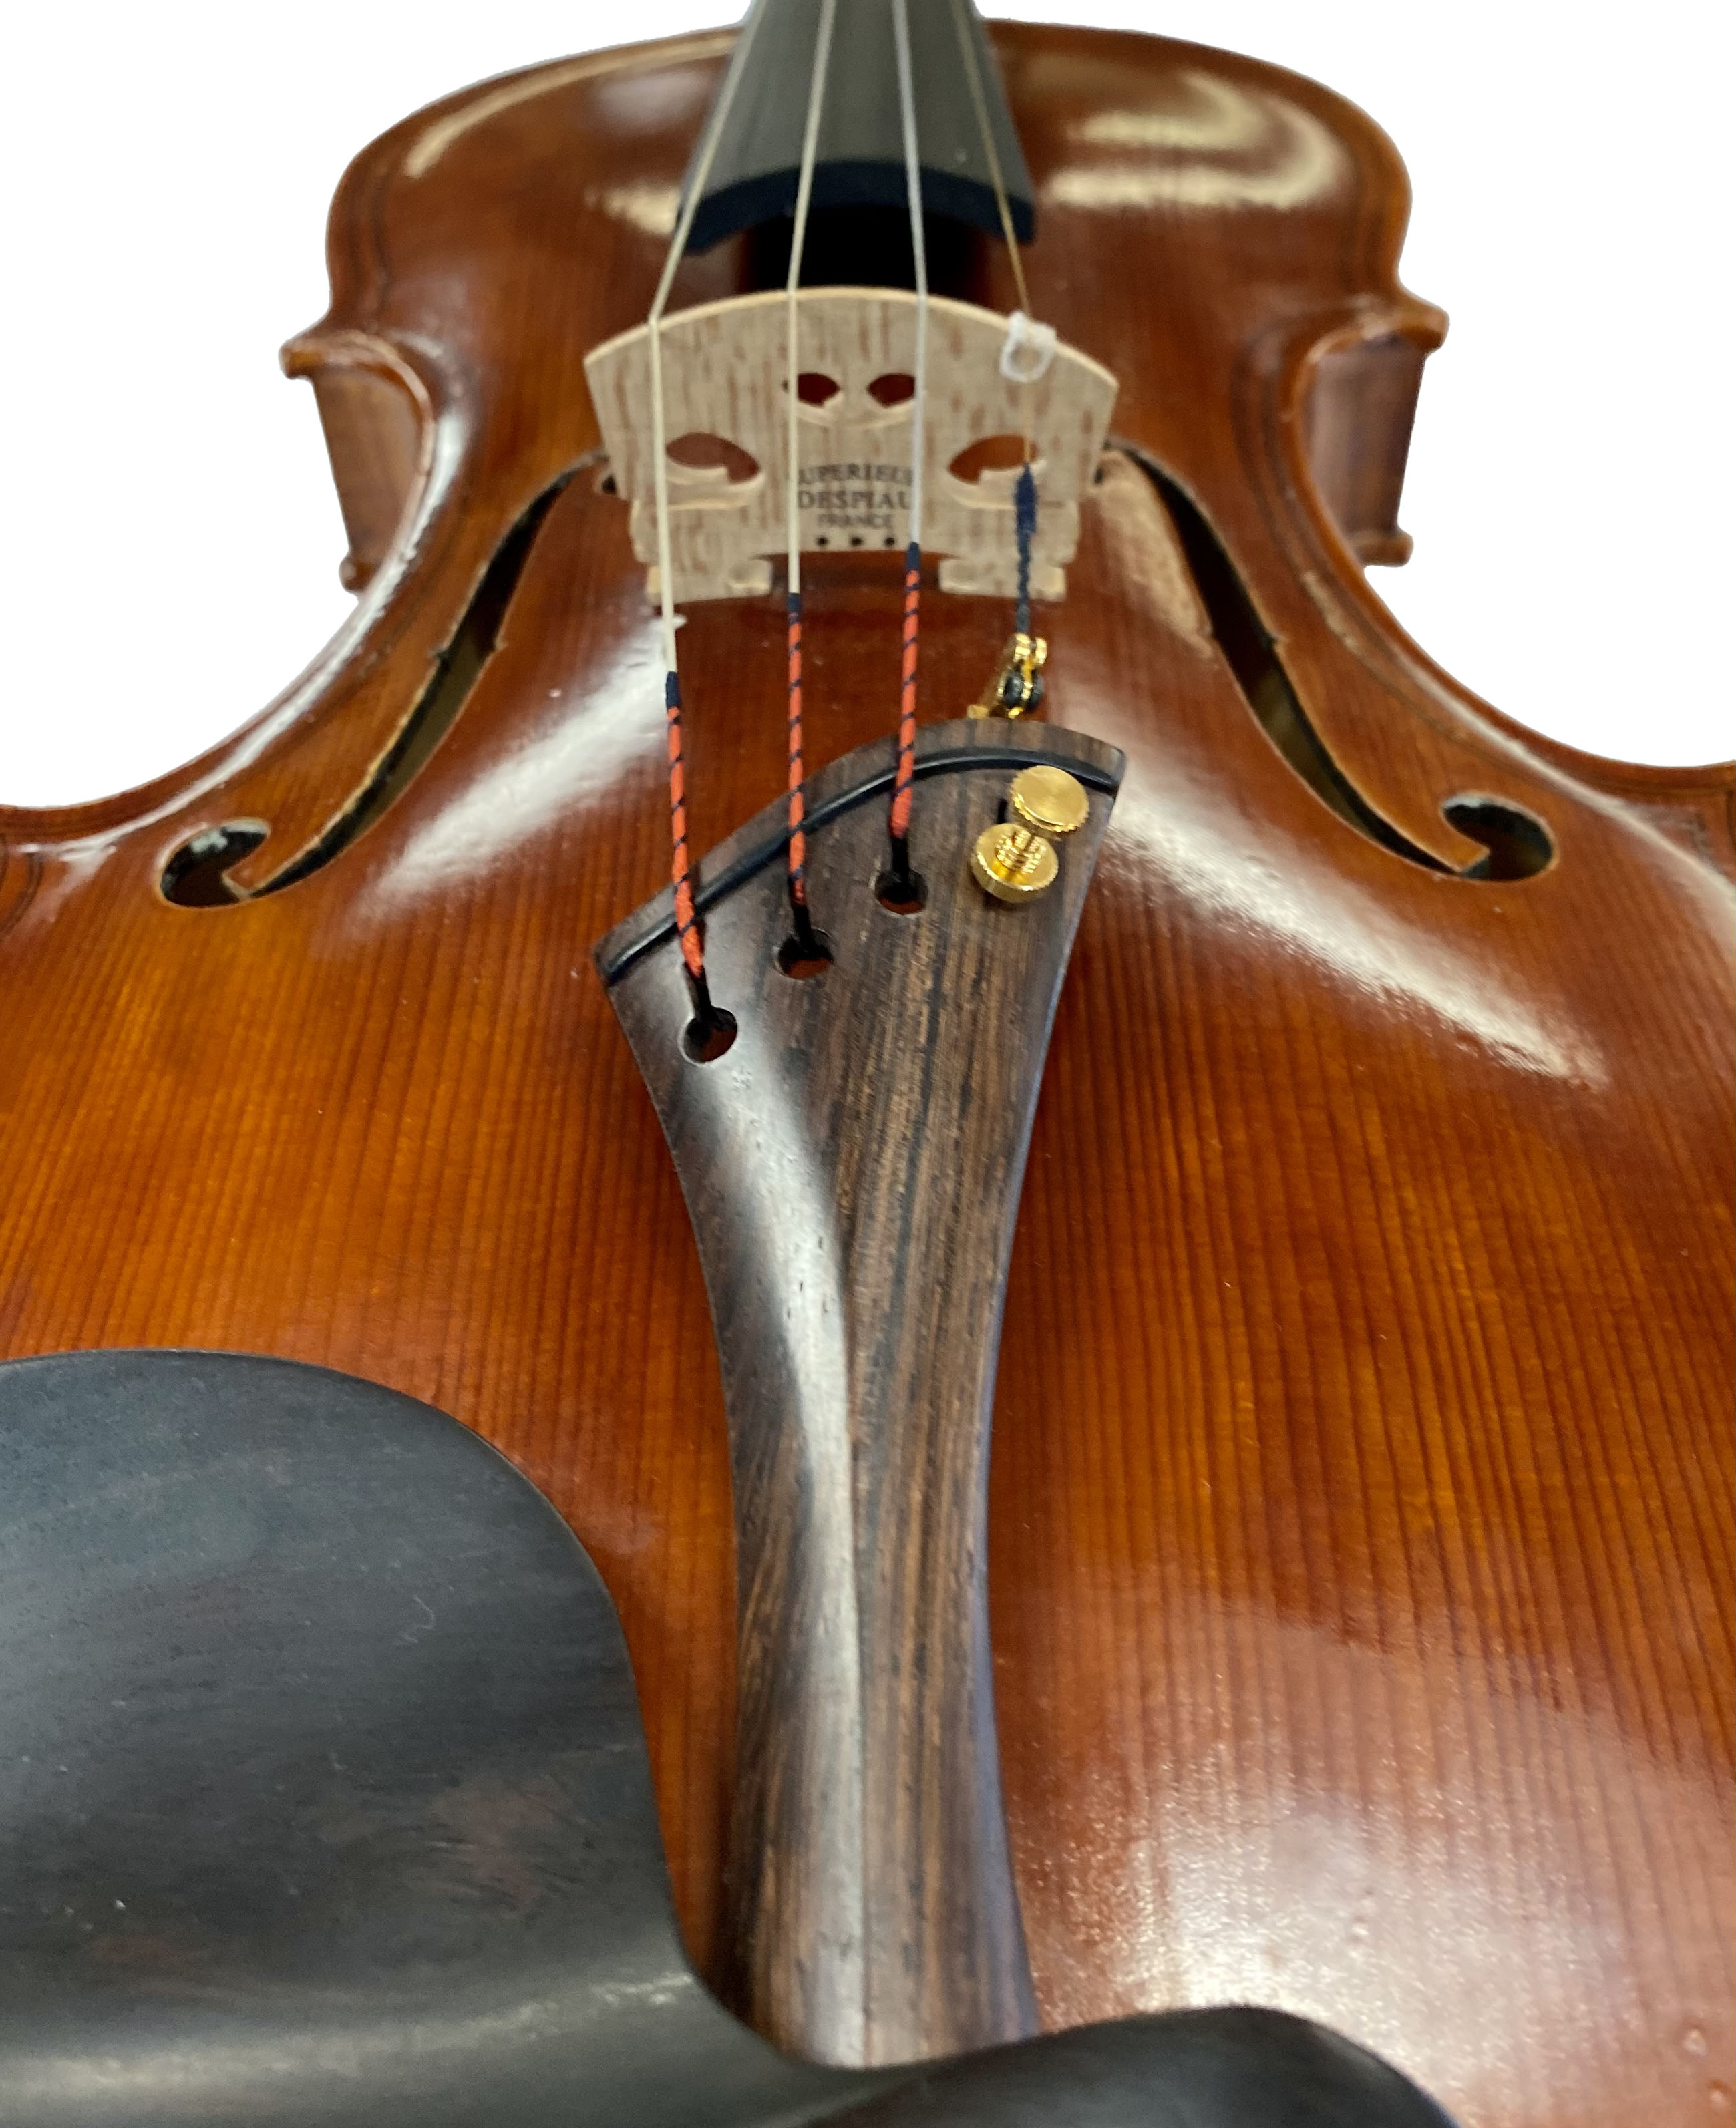 ZS Strings Maggini Model Violin in action